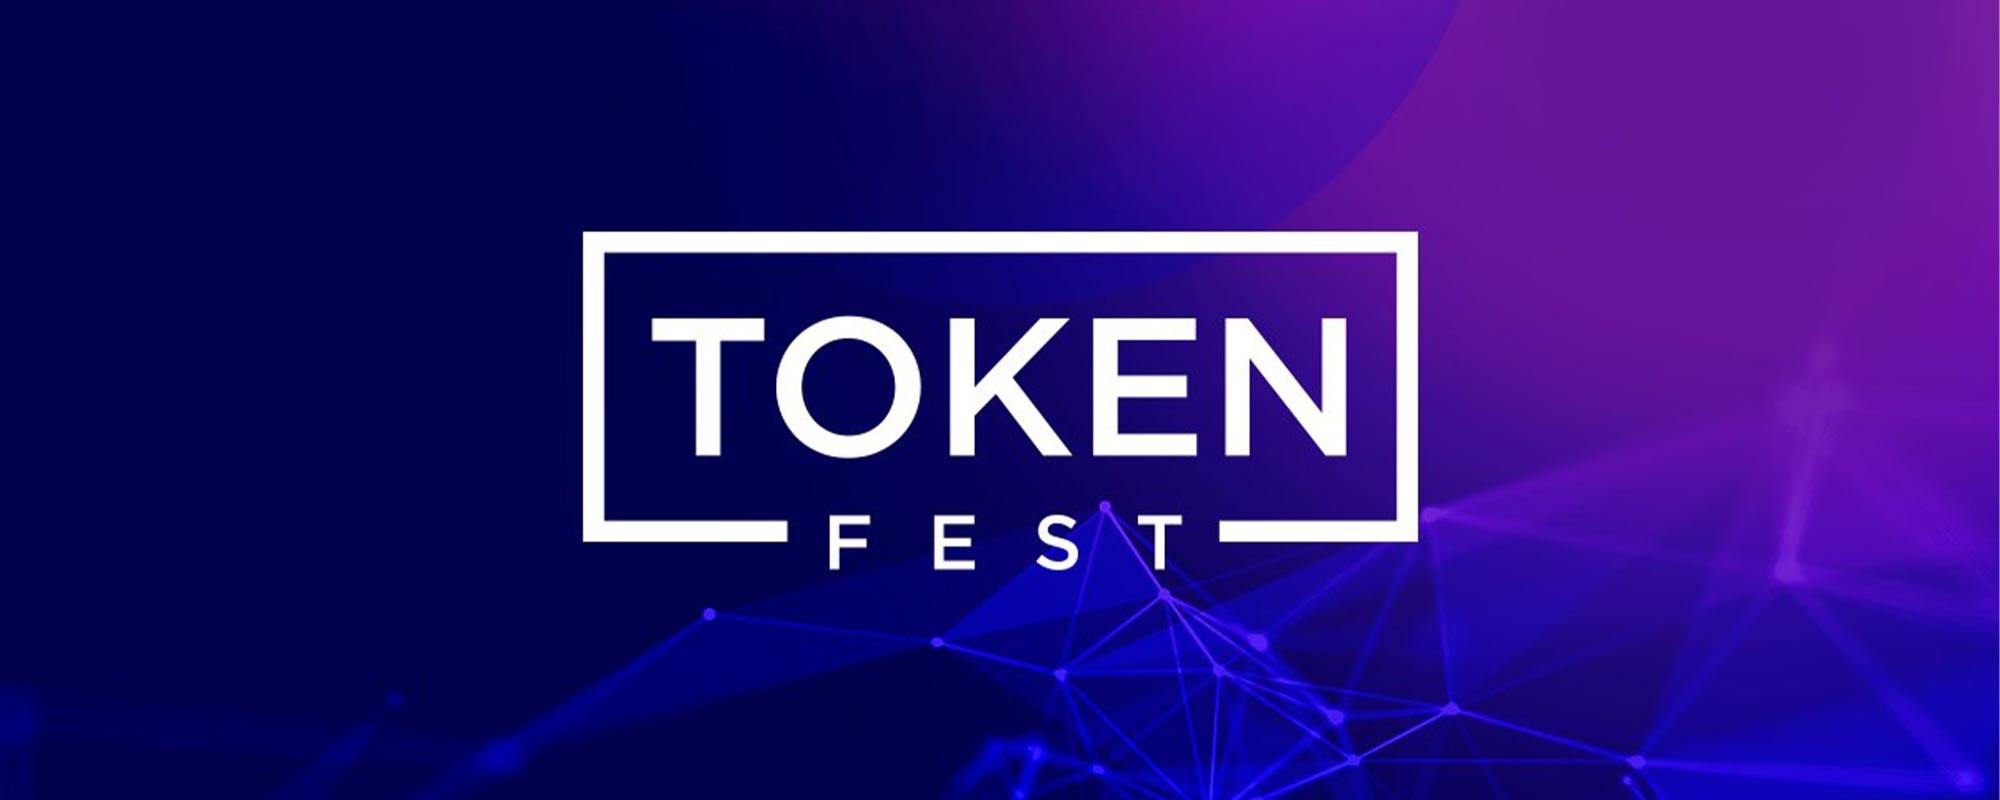 UCX attends Token Fest 2018